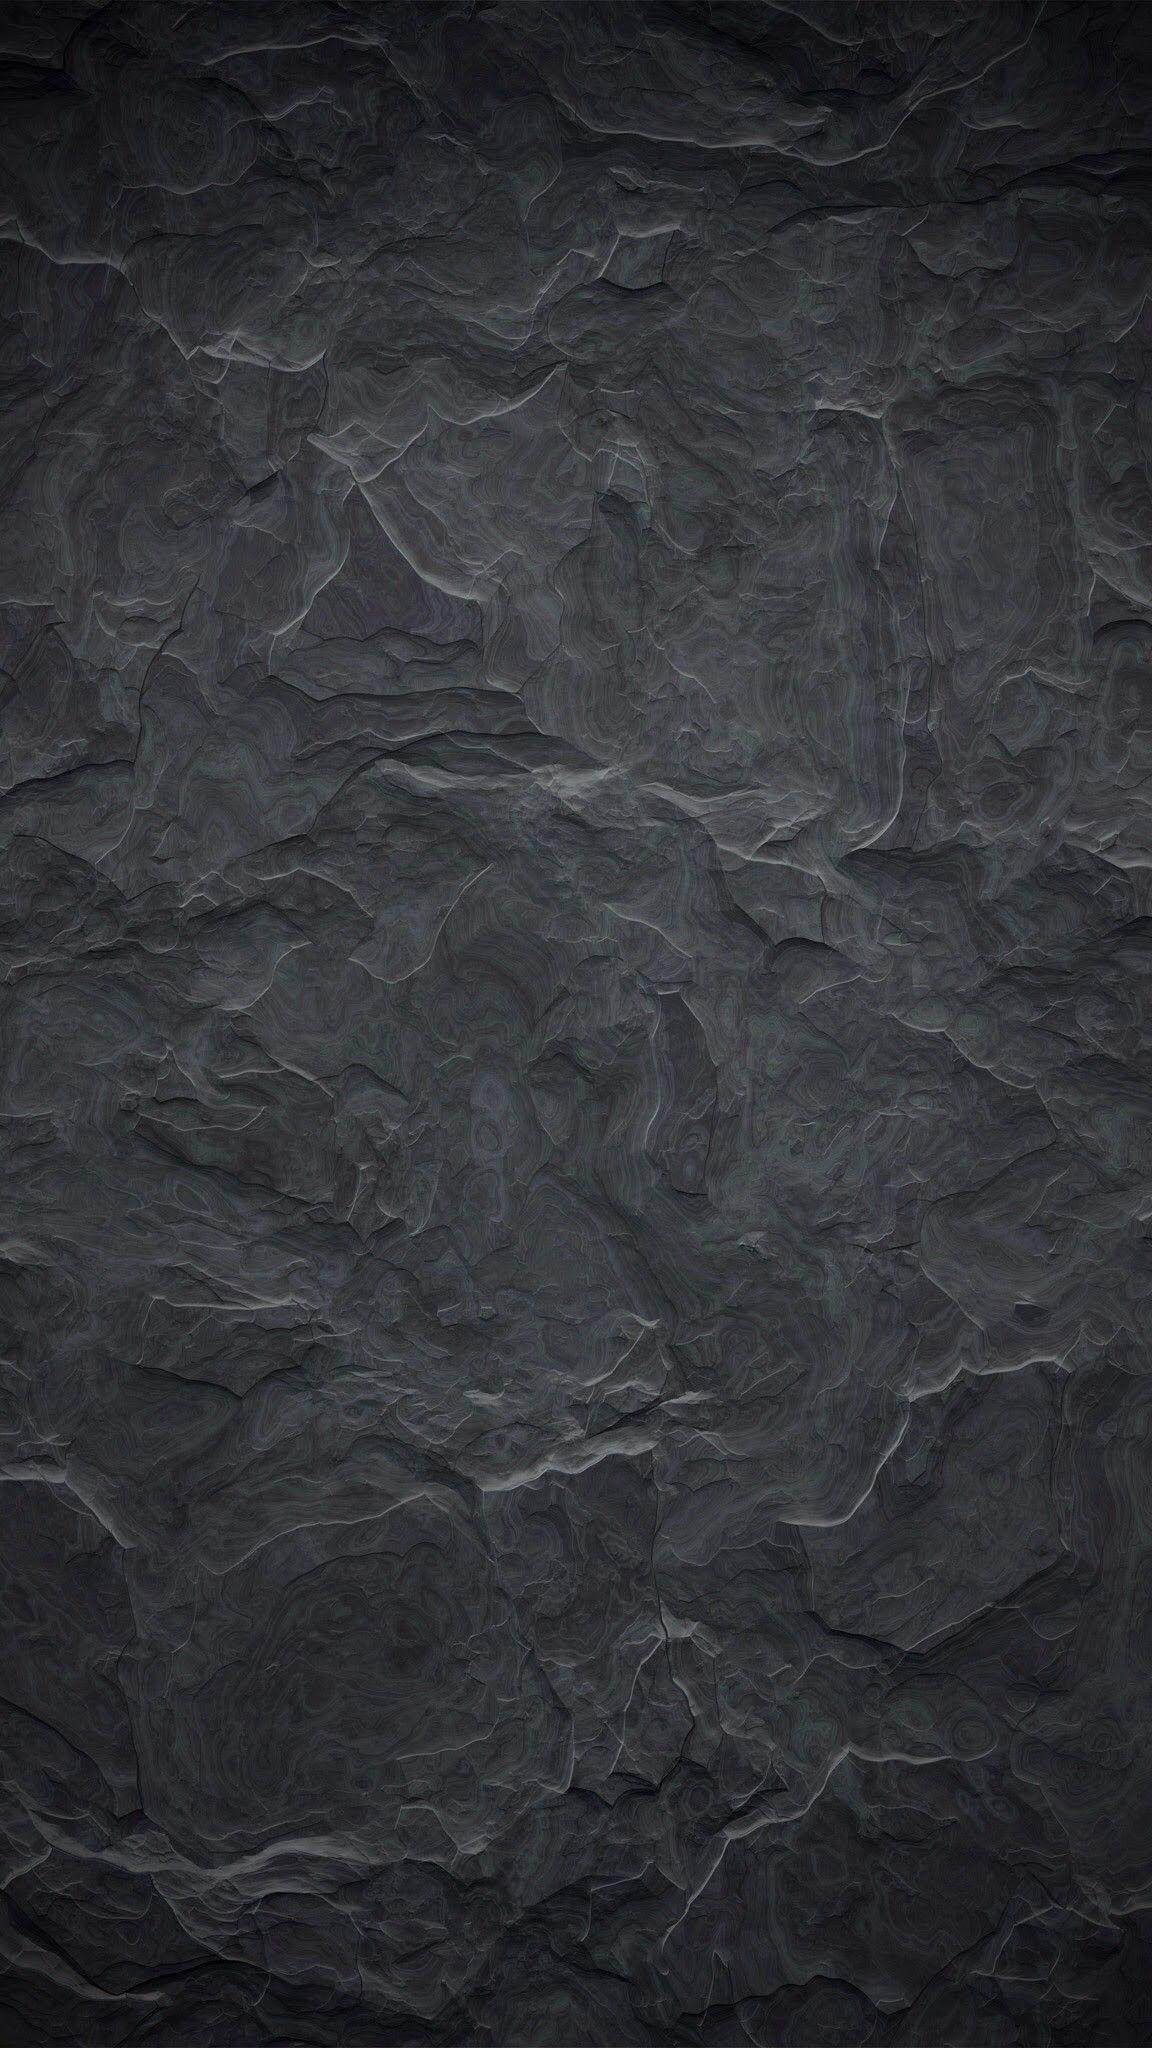 Download 70+ Grey Themed Iphone Wallpaper Gambar Populer Terbaik - Posts.id